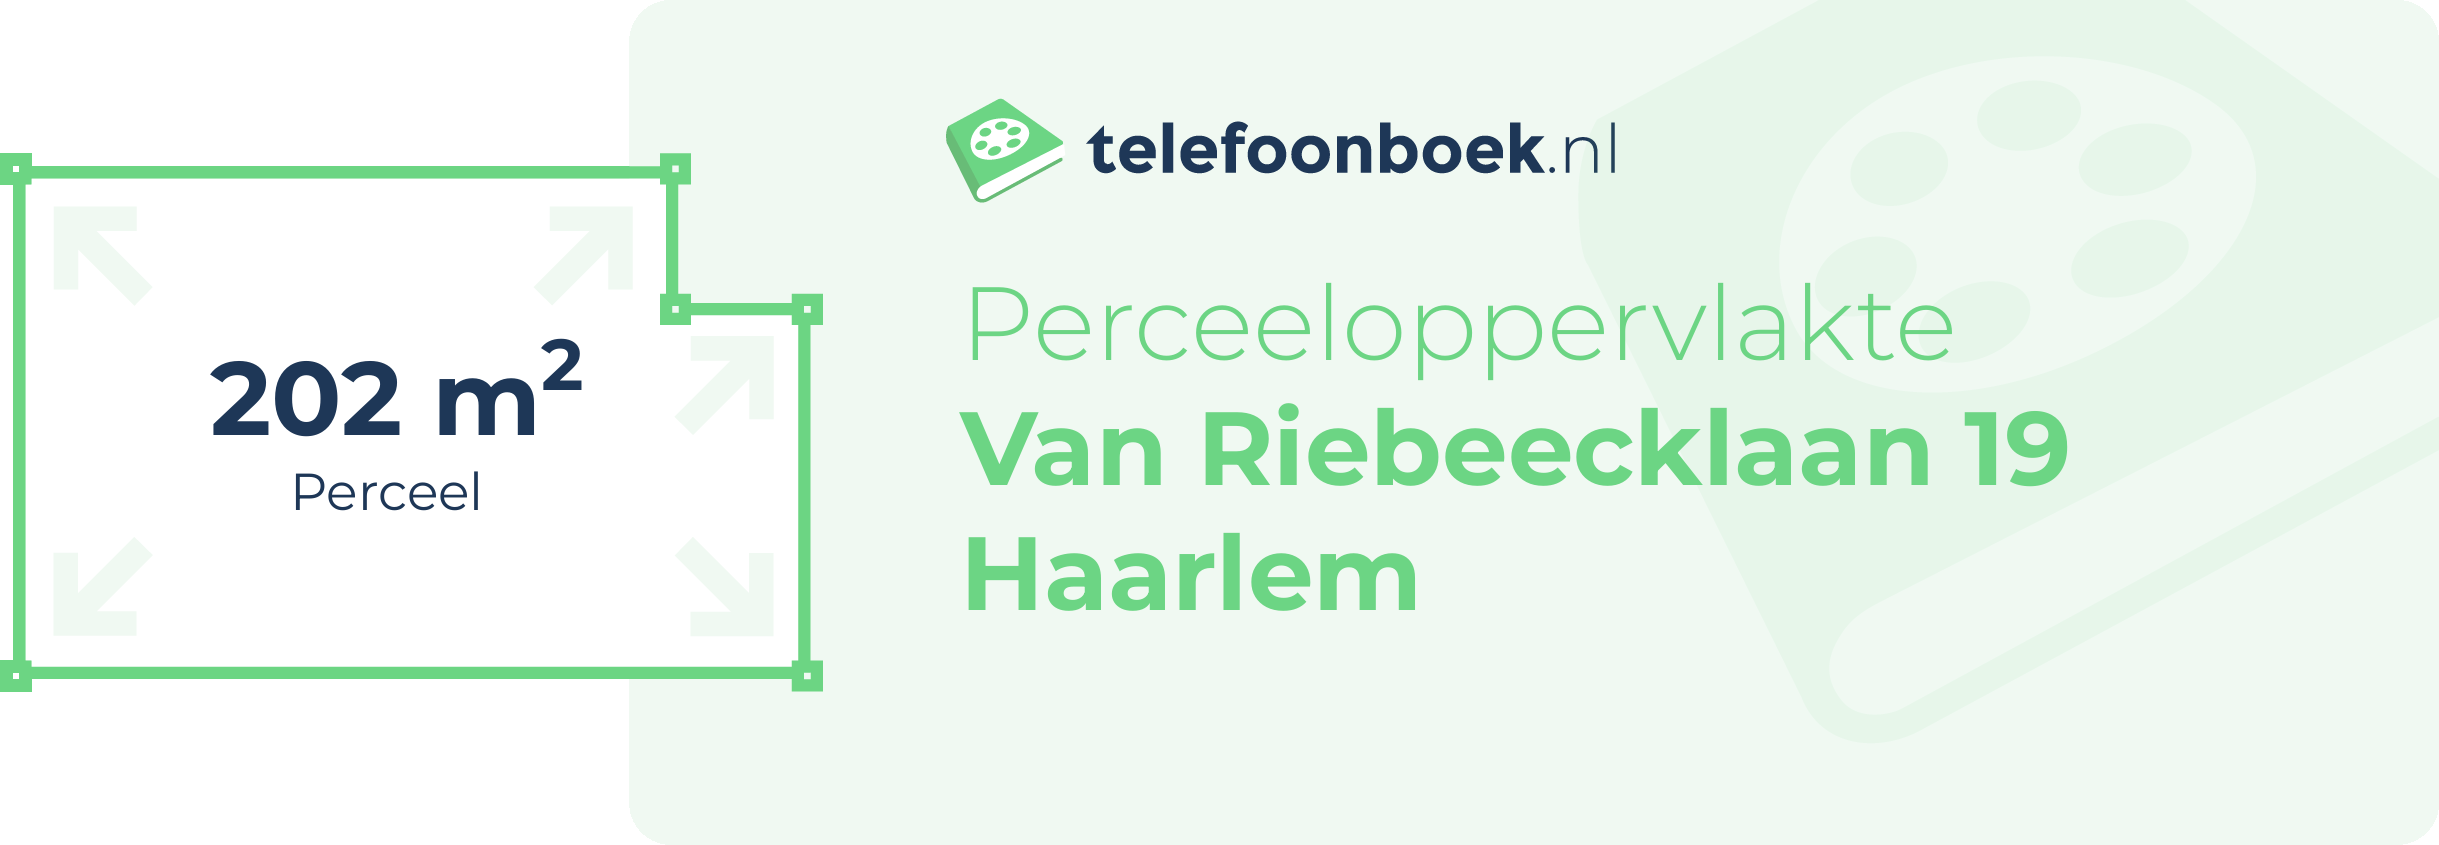 Perceeloppervlakte Van Riebeecklaan 19 Haarlem